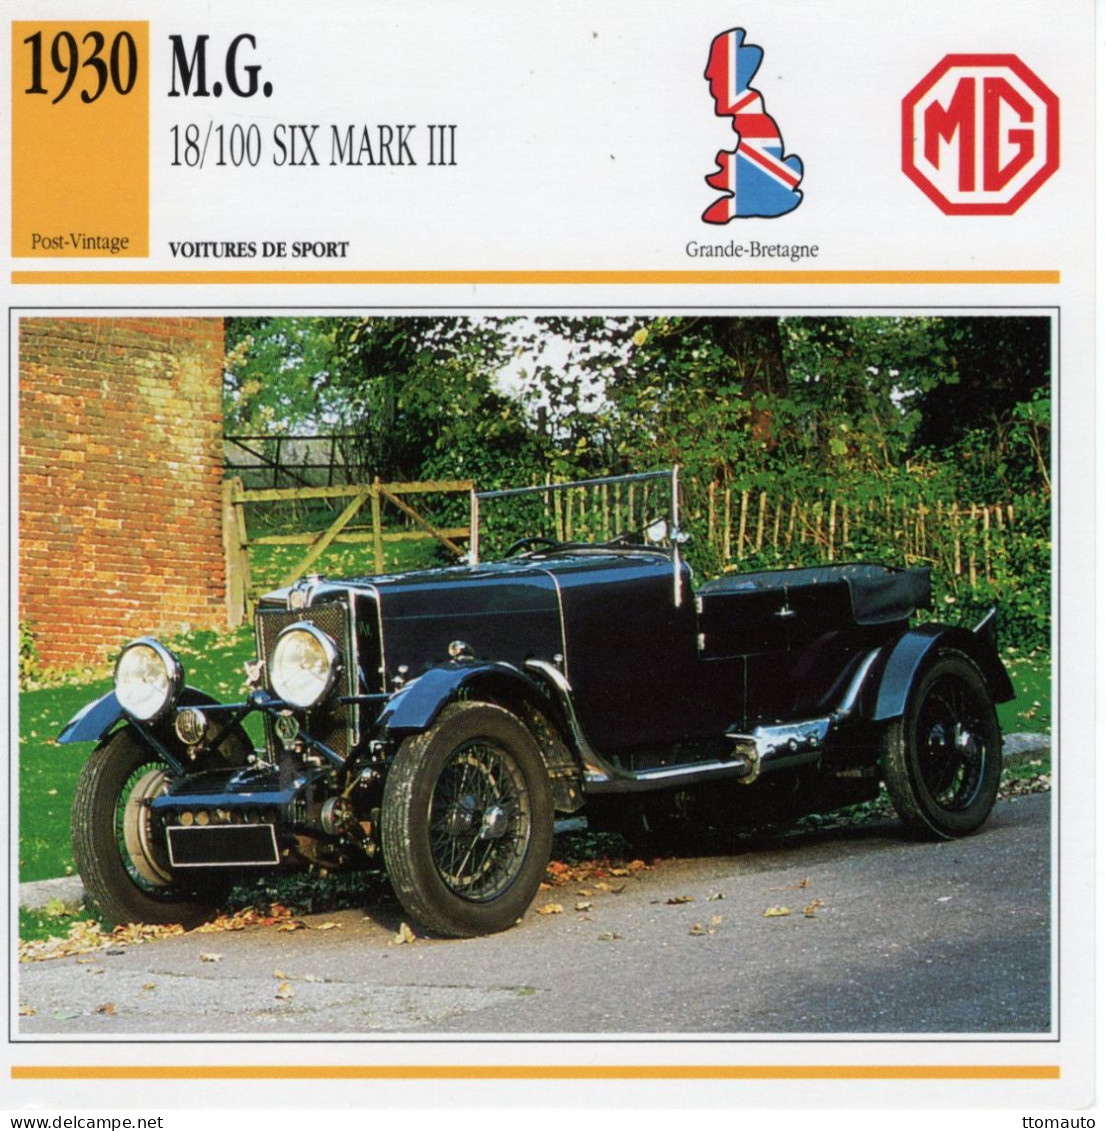 Fiche  -  Voiture De Sport  -  M.G. 18/100 Six Mk.III  (1930)   -  Carte De Collection - Automobili